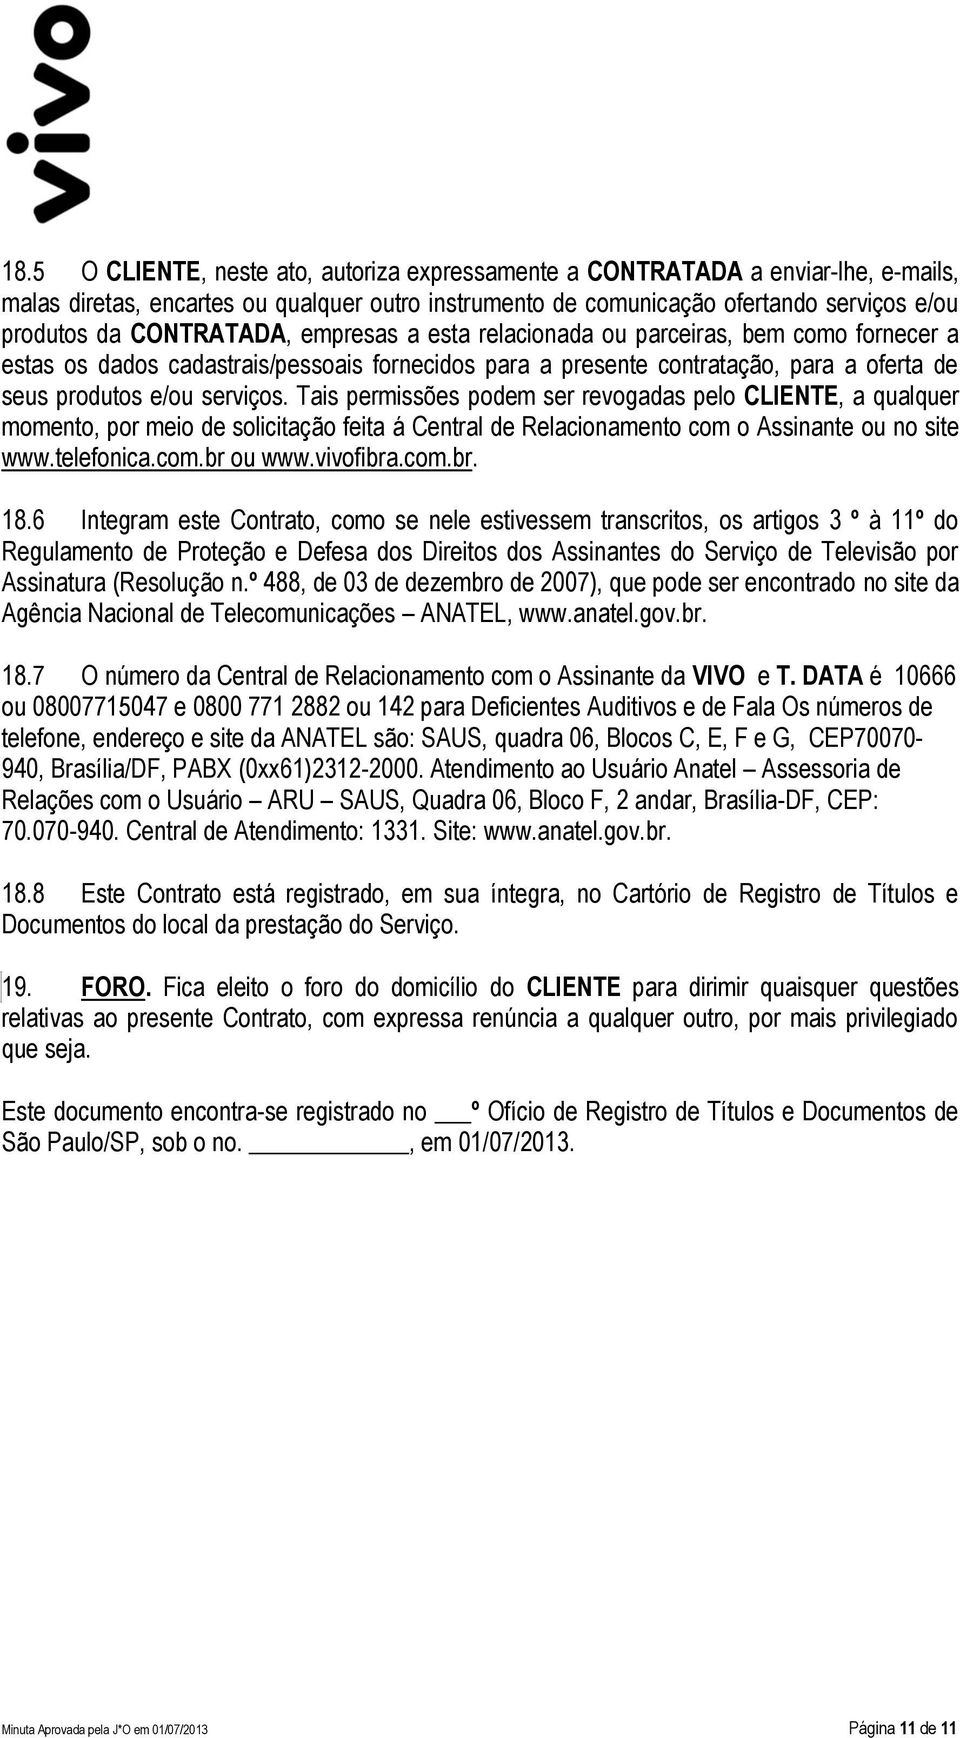 Tais permissões podem ser revogadas pelo CLIENTE, a qualquer momento, por meio de solicitação feita á Central de Relacionamento com o Assinante ou no site www.telefonica.com.br ou www.vivofibra.com.br. 18.